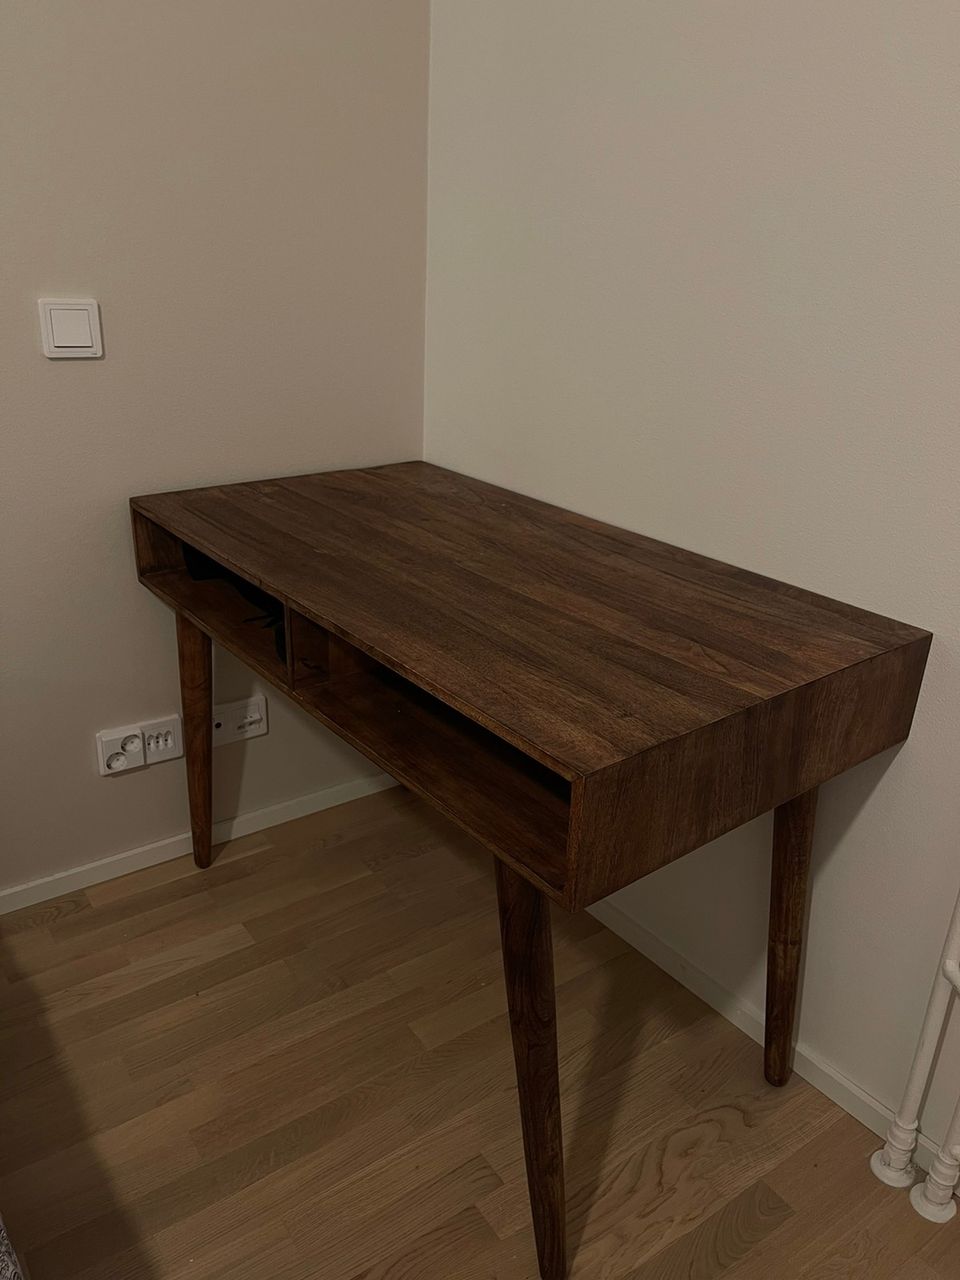 ELLOS wooden desk 110 x 60 x 76 cm